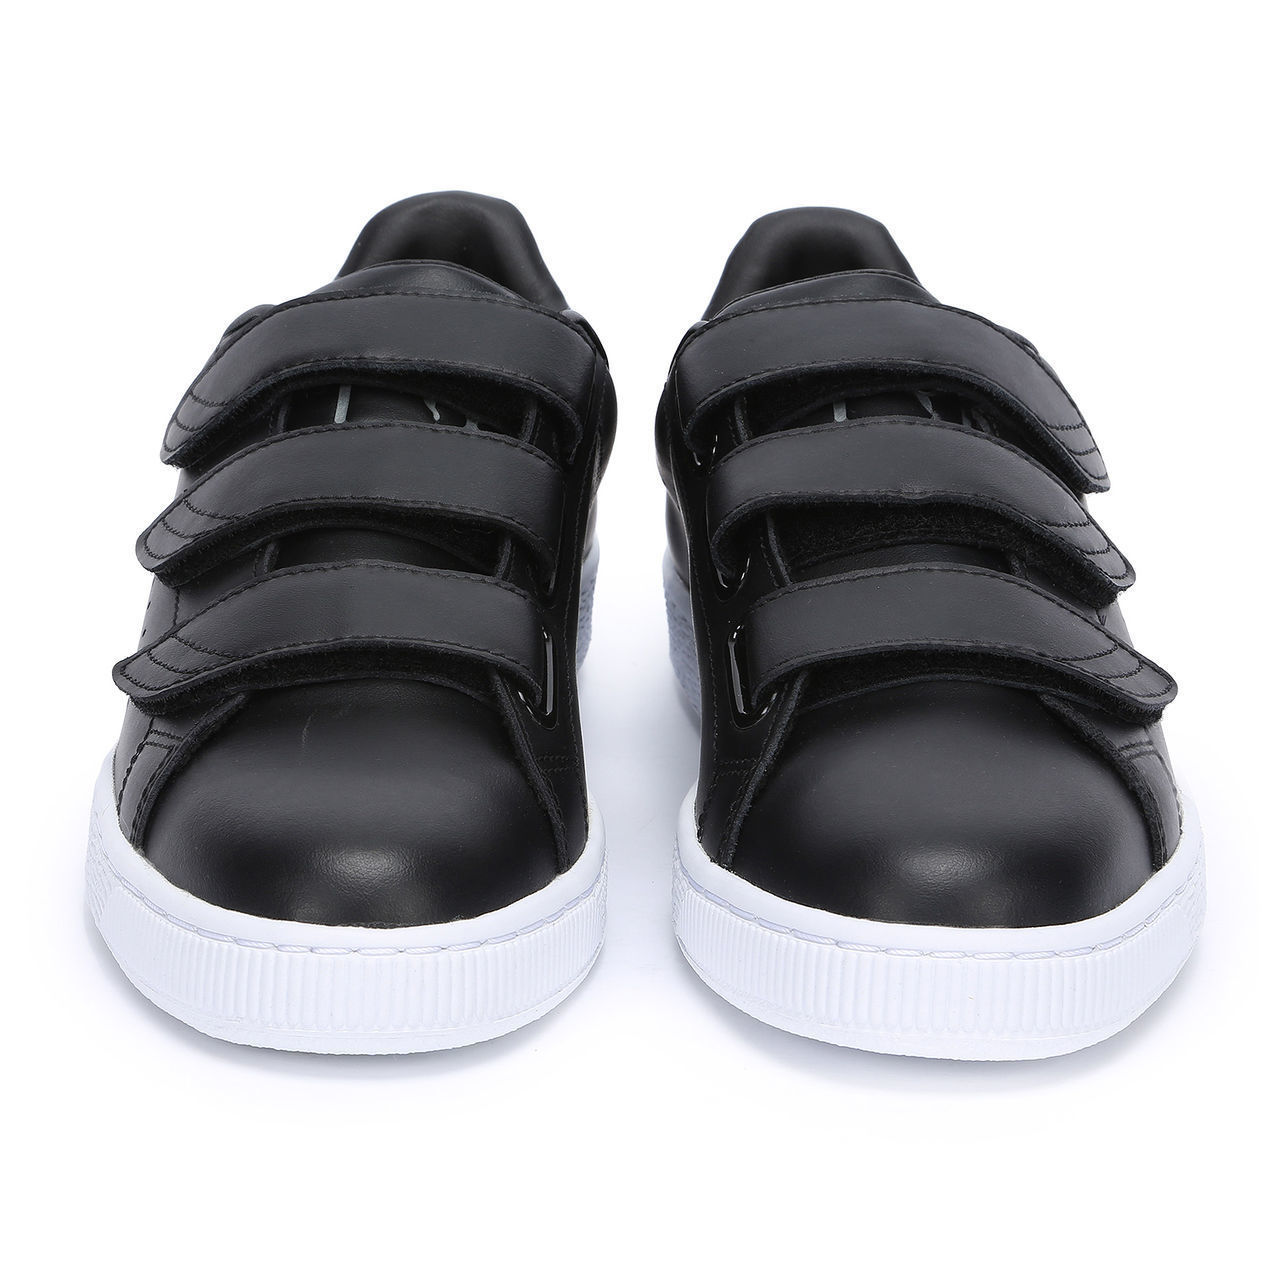 Обувь на липучках мужская. Кроссовки Basket Classic Strap (цвет Black) Puma. Адидас черные на липучках 43. Adidas 2023 кроссовки с липучкой.